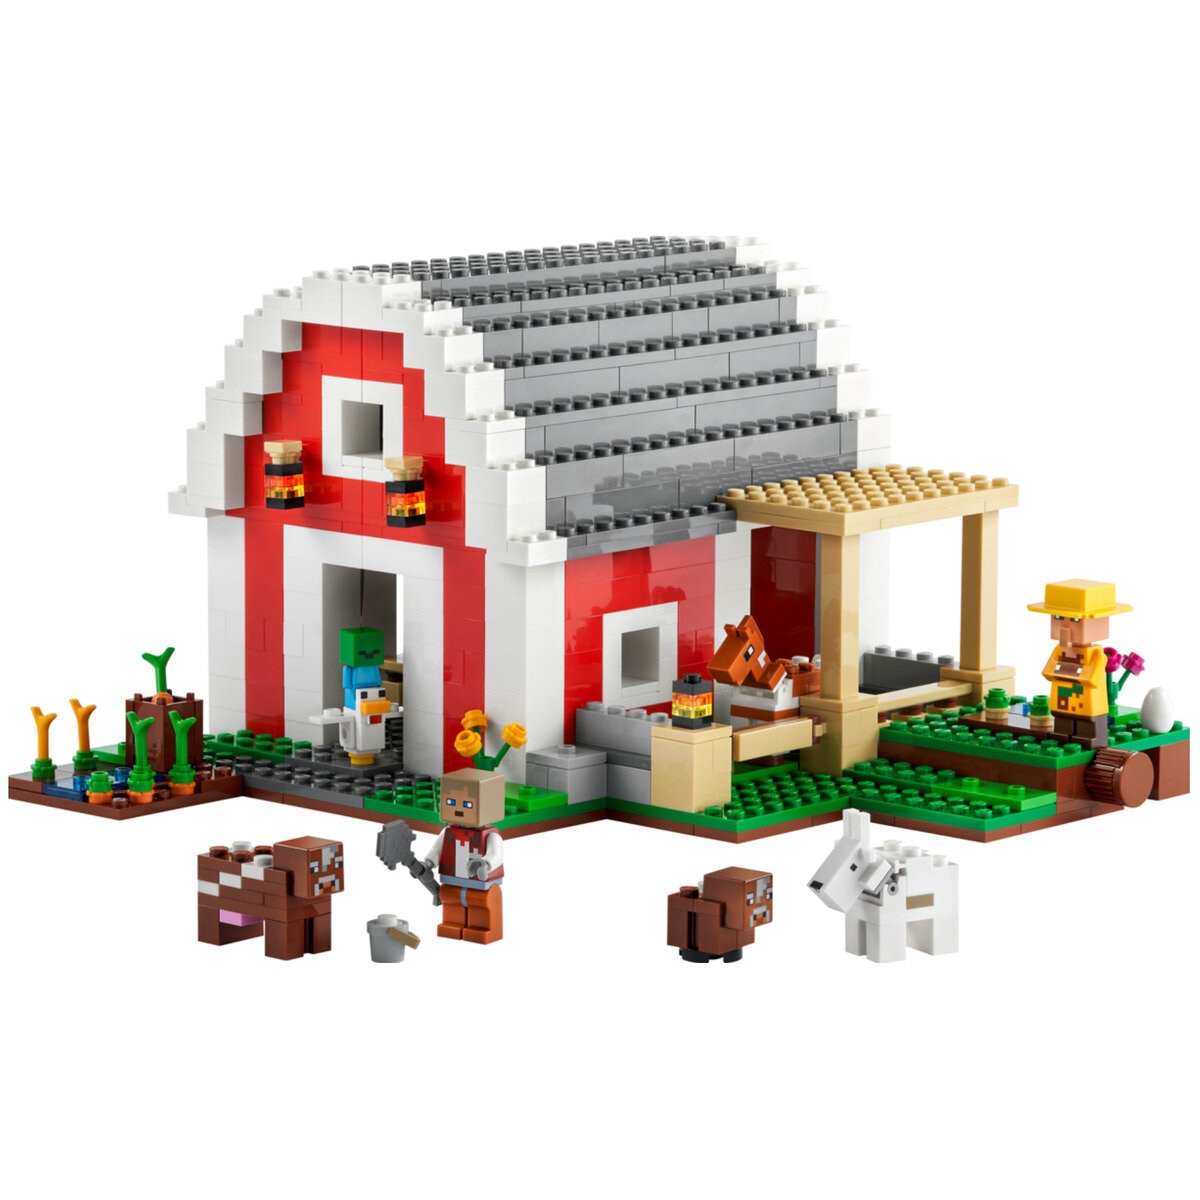 レゴ マインクラフト 赤い馬小屋